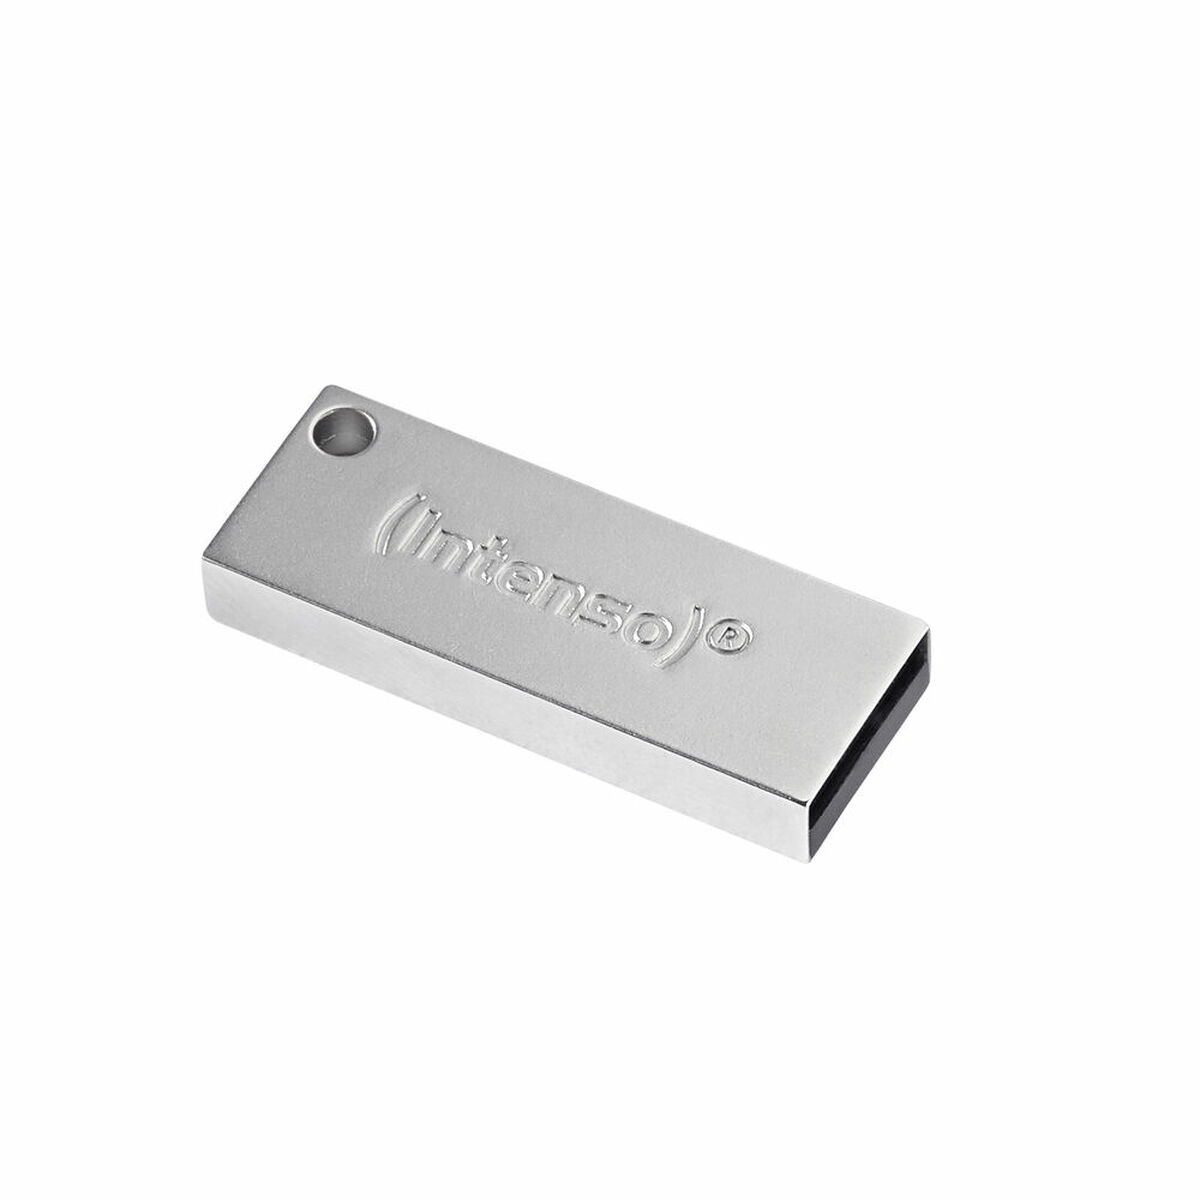 INTENSO 3534470 16GB PREMIUM (Silber, 16 USB-Stick GB) LINE